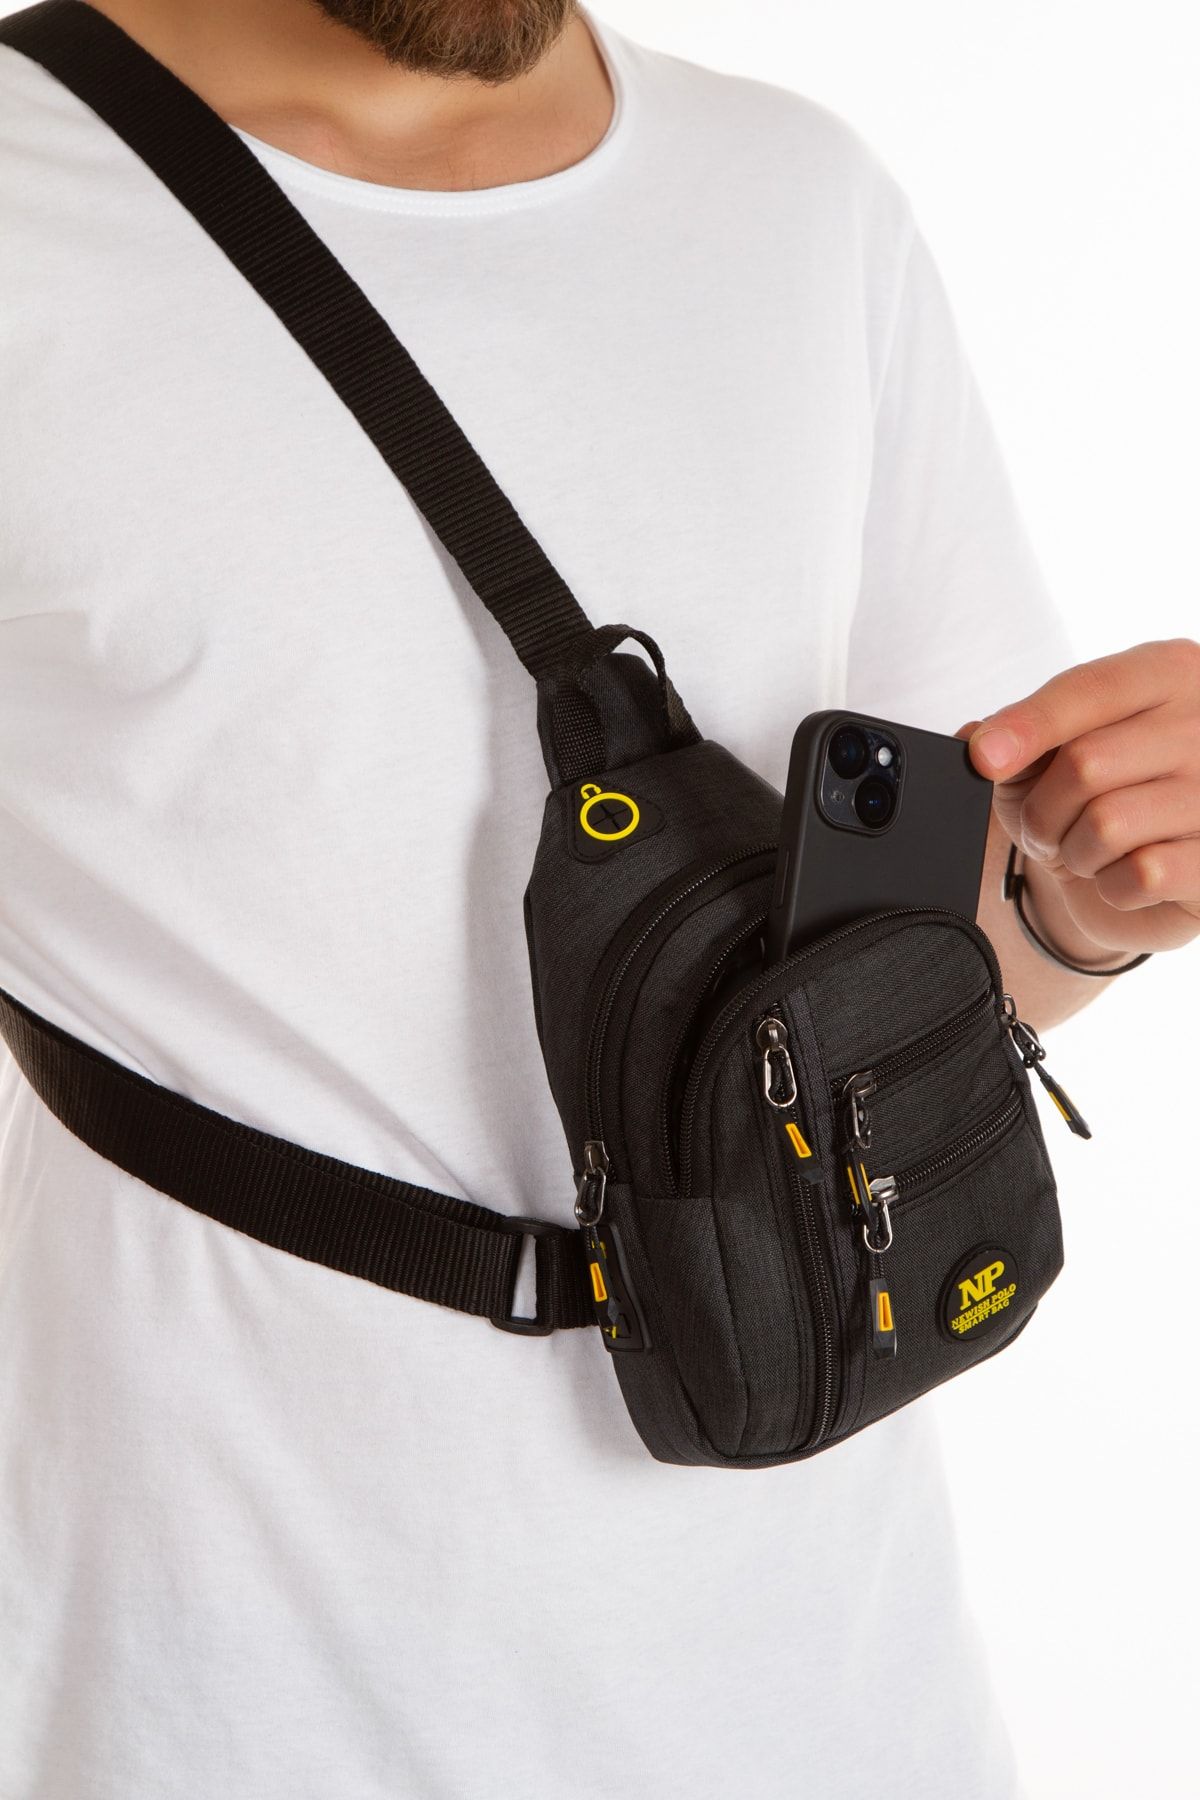 NEWISH POLO ACCESSORIES Unisex Su Geçirmez Kulaklık Usb Çıkışlı Çapraz Askılı Çanta Bel Omuz Ve Göğüs Çanta Günlük Bodybag